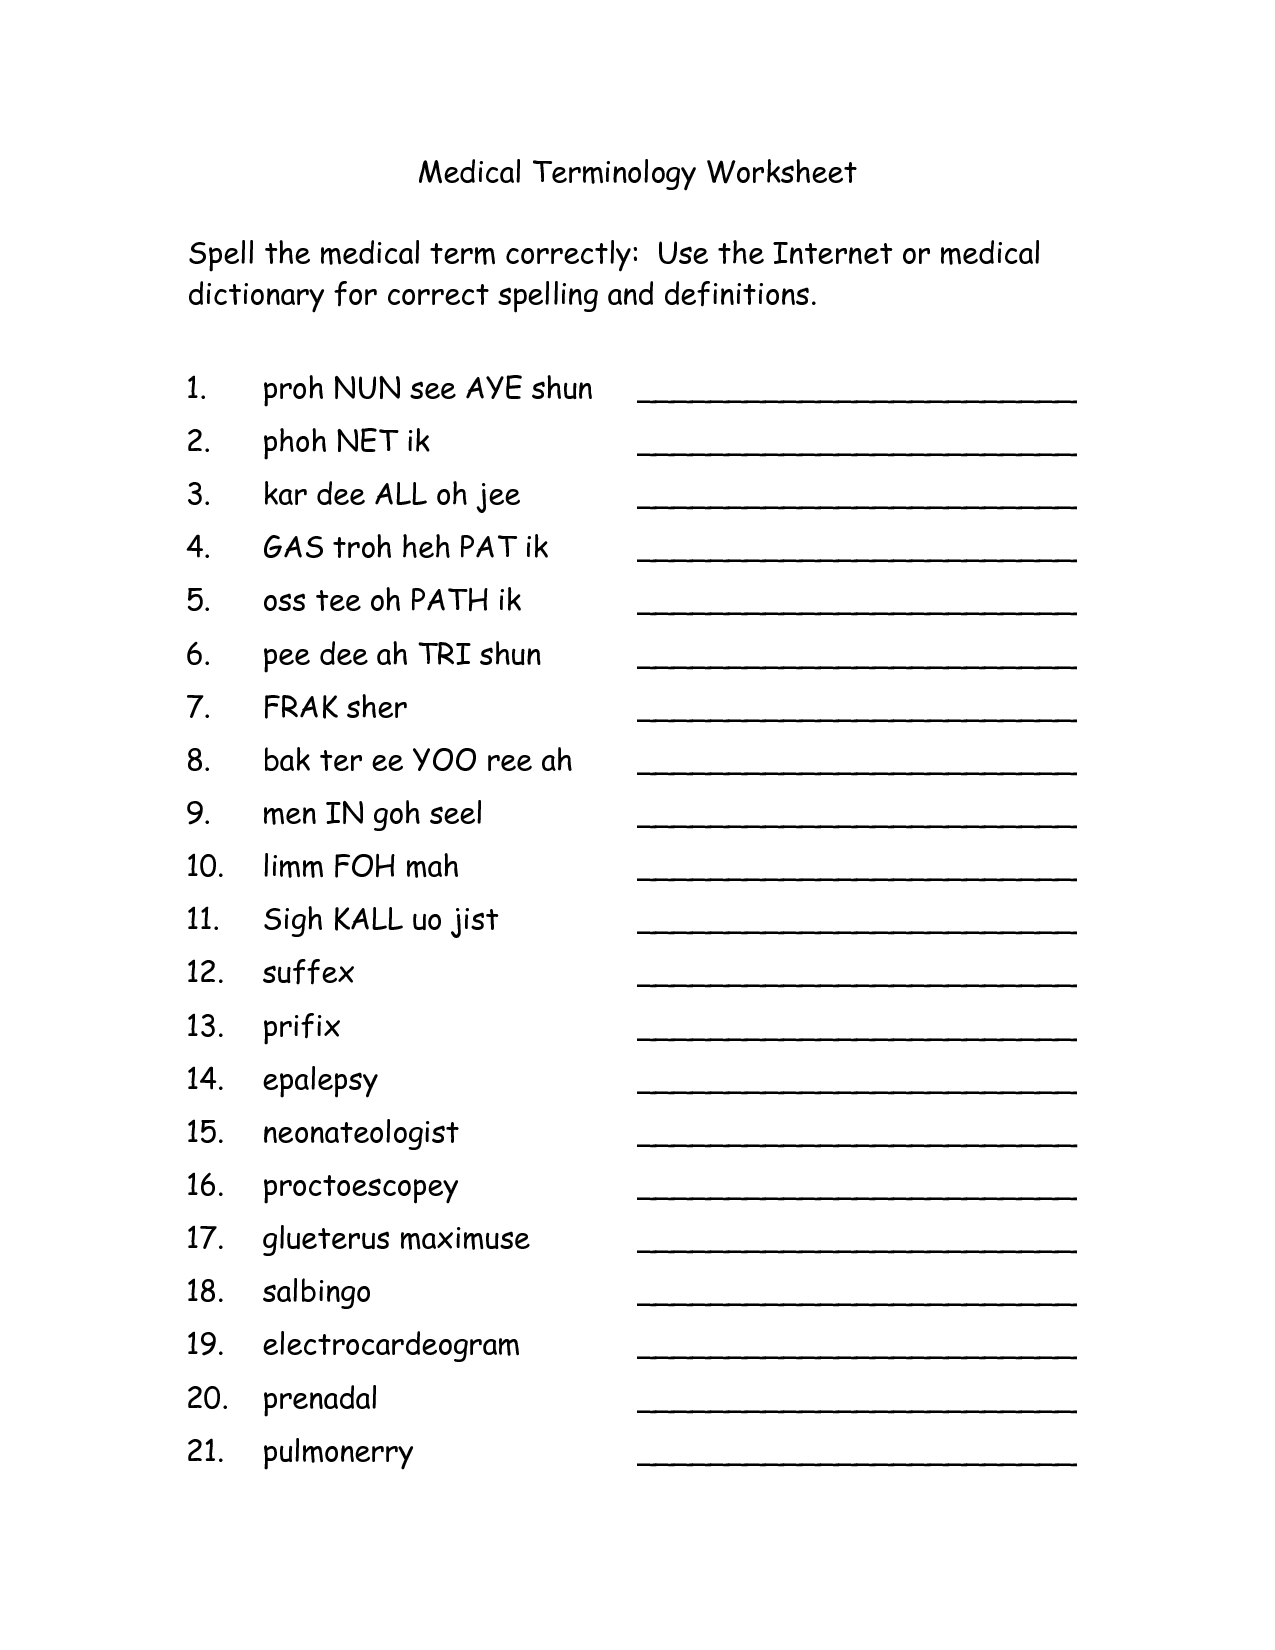 Medical Worksheets Free Printable